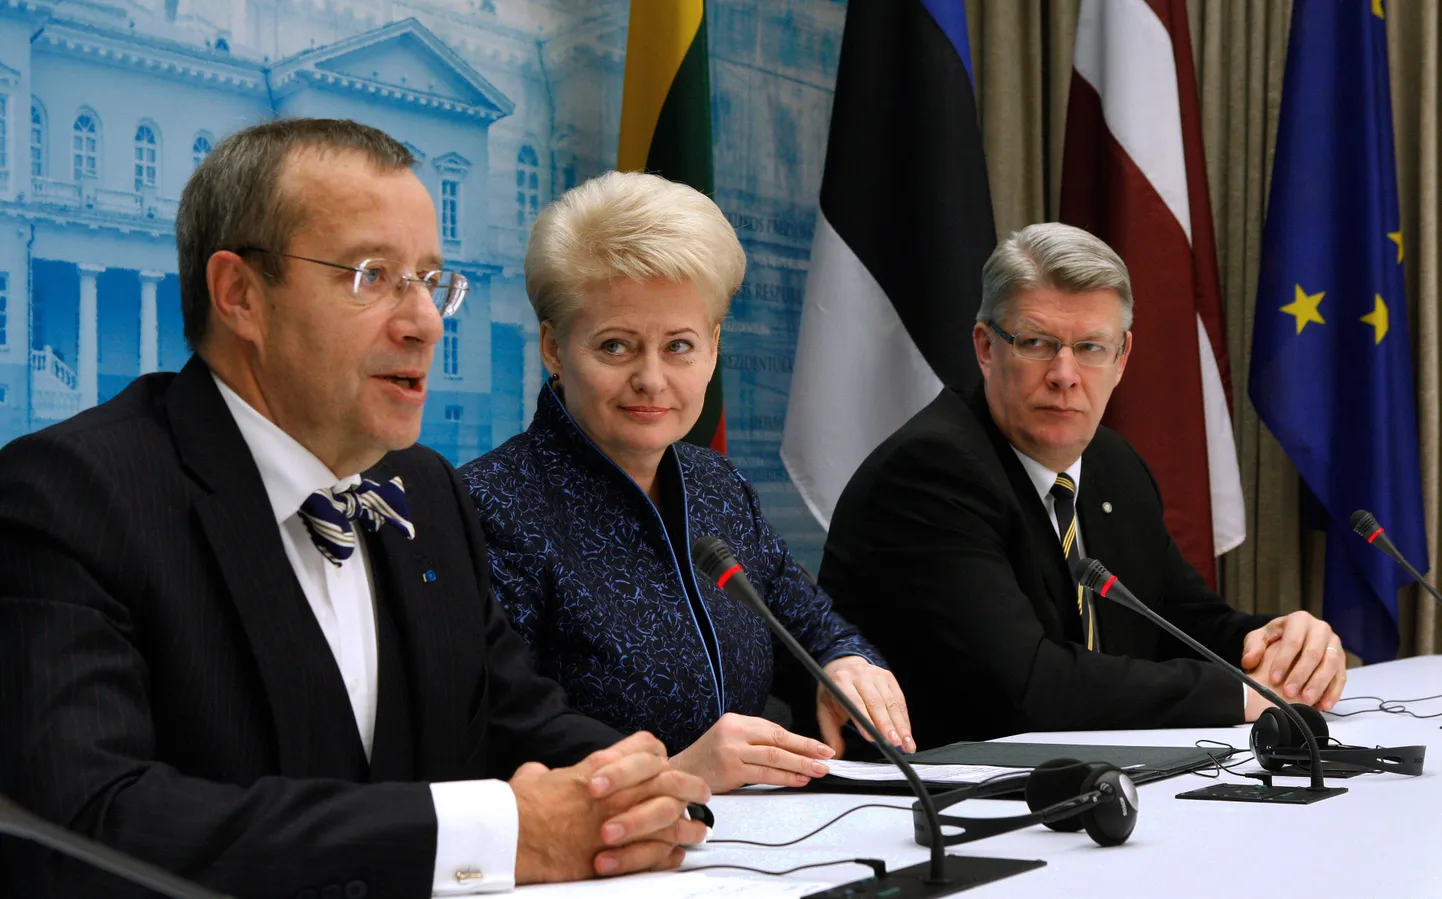 Leedu president Dalia Grybauskaite oma Eestist ja Lätist saabunud ametivendade vahel.